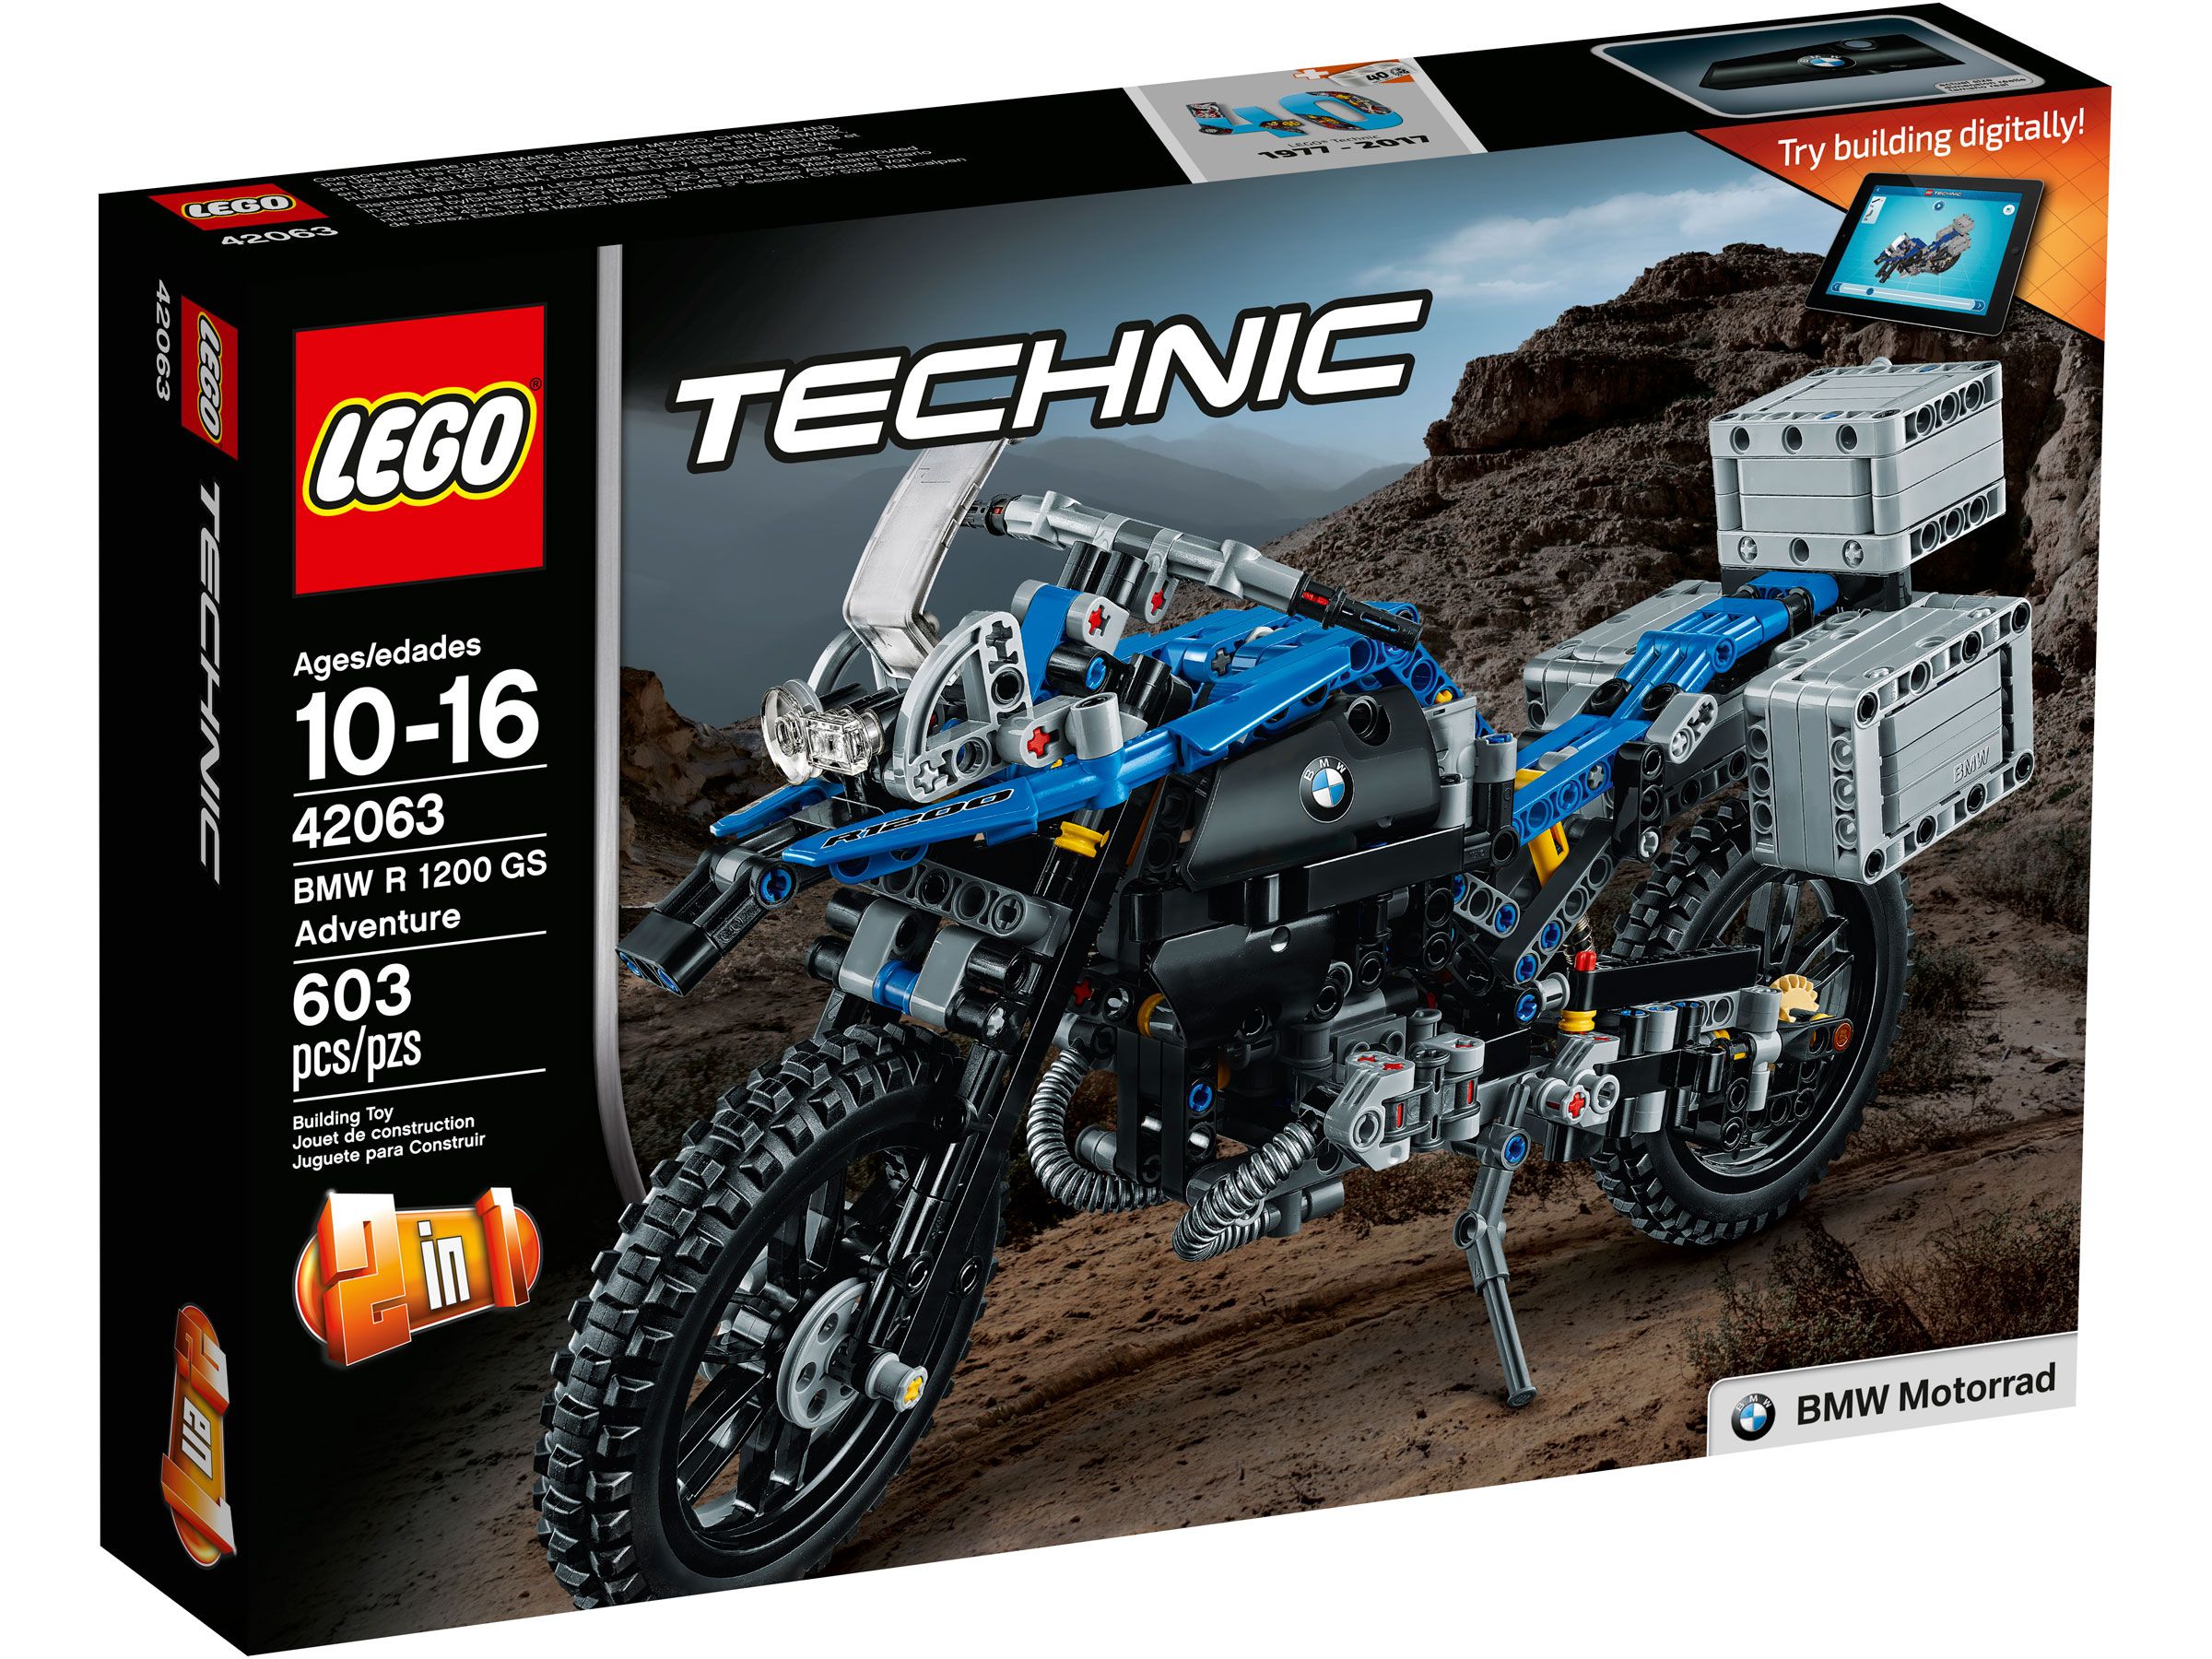 LEGO Technic 42063 BMW R 1200 GS Adventure LEGO_42063_Box1_v39.jpg